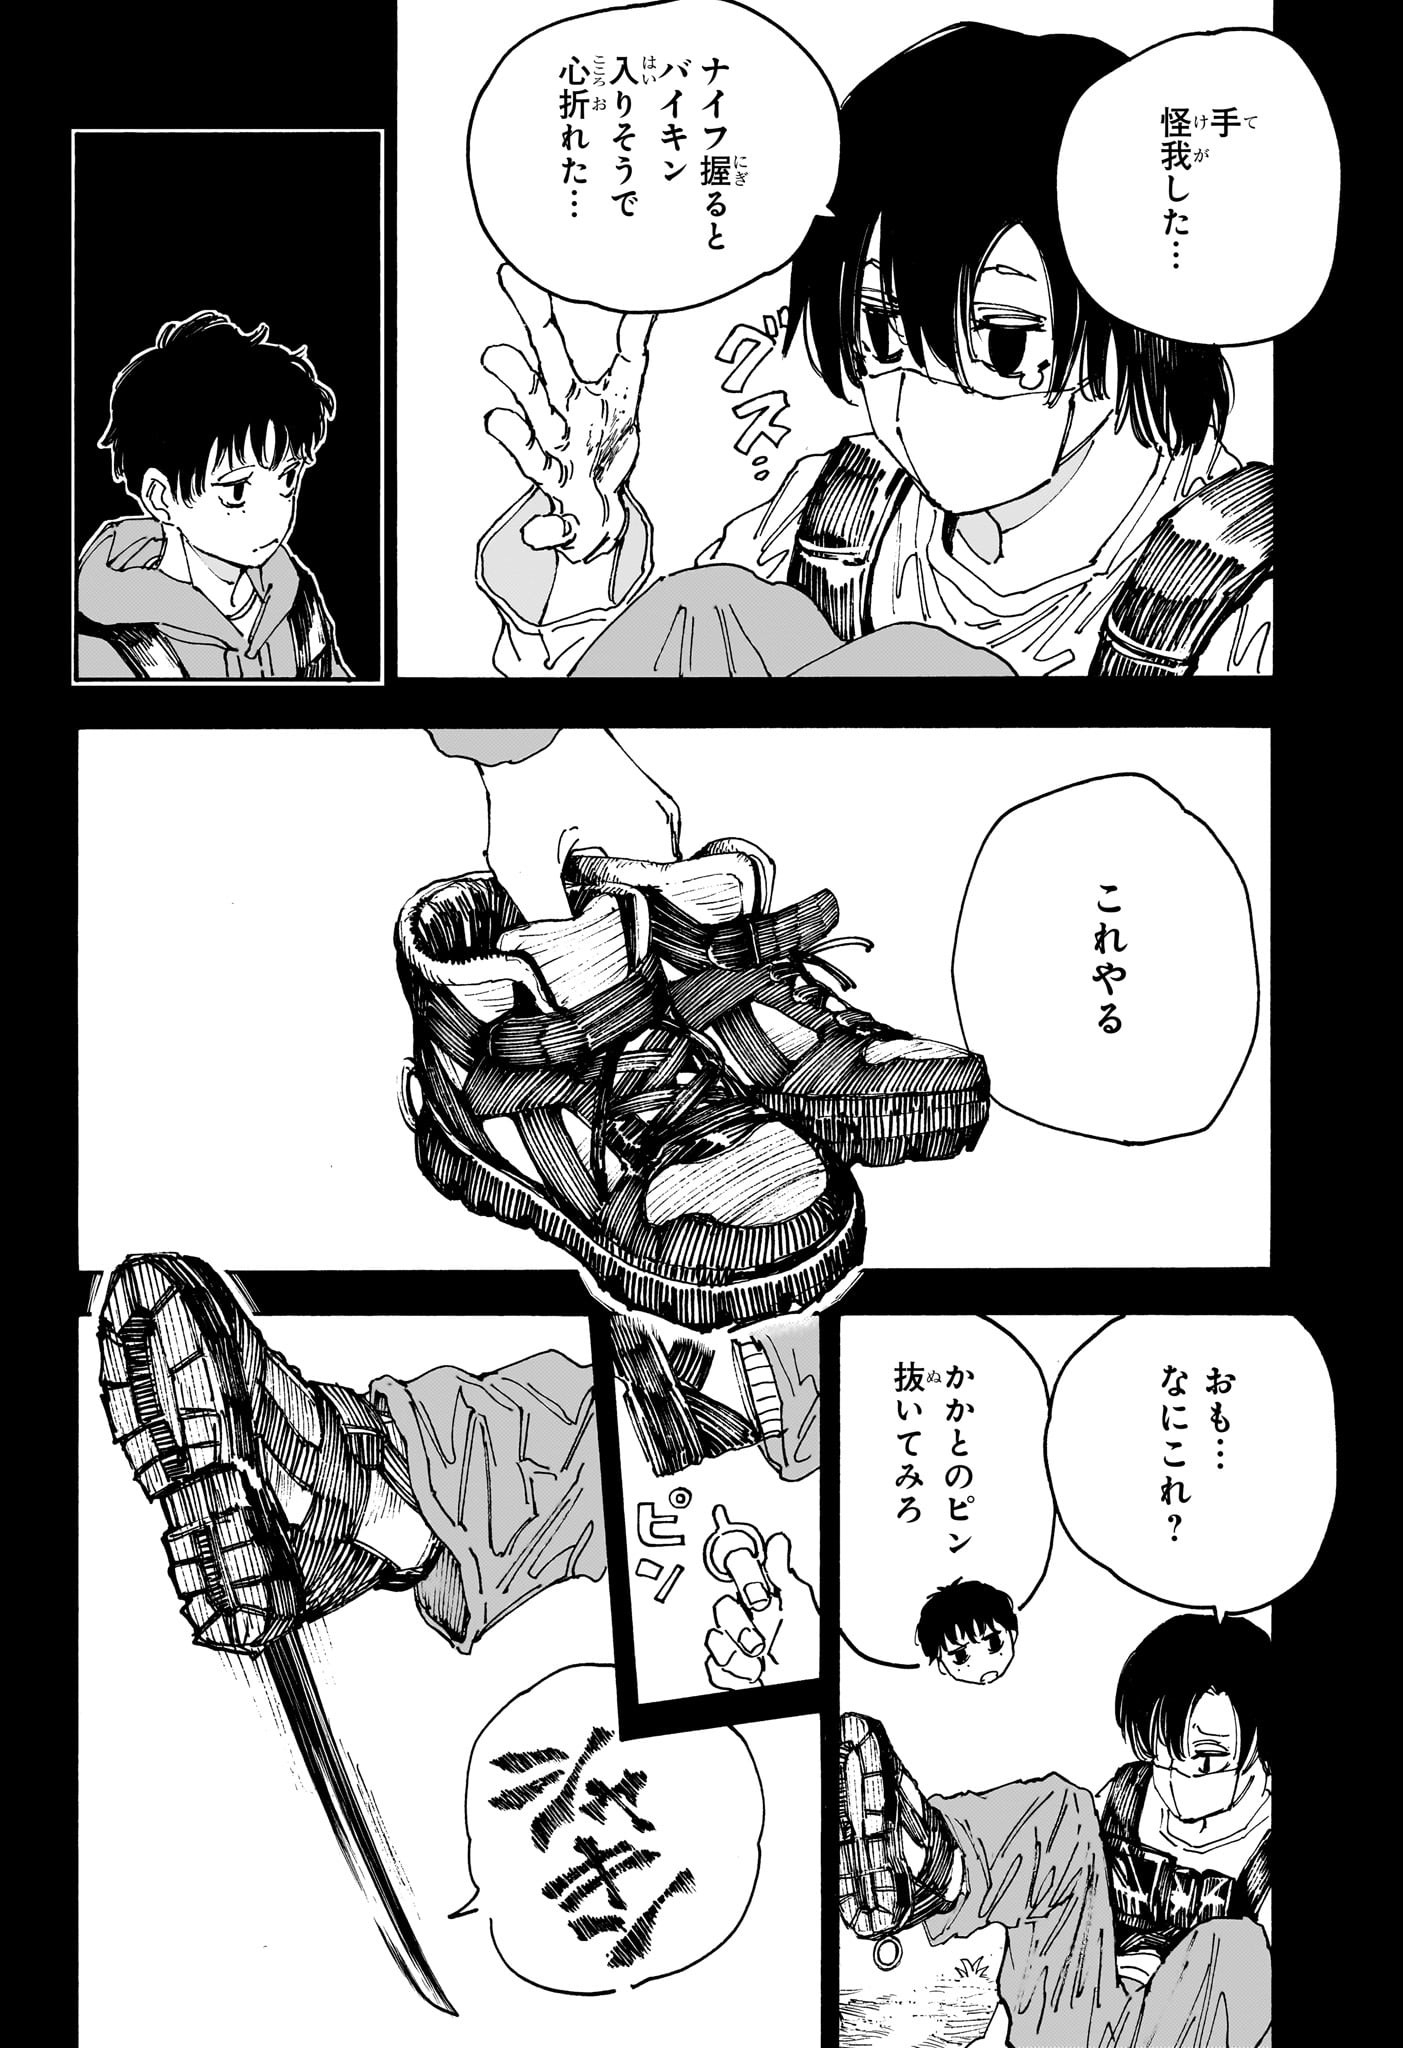 Sakamoto Days - Chapter 145 - Page 2